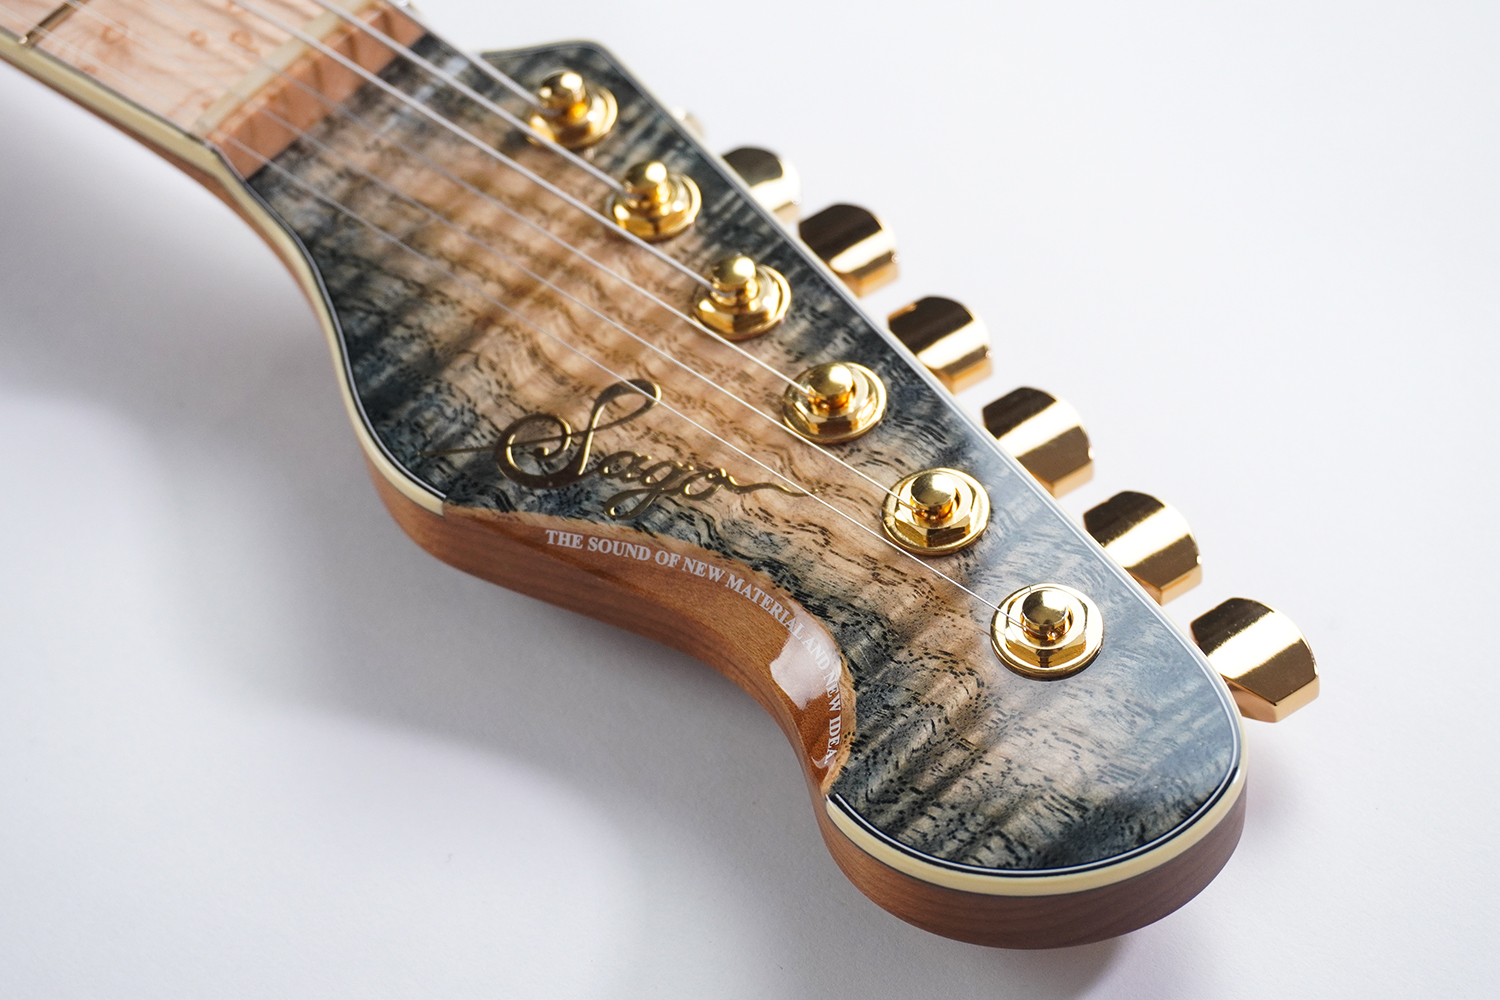 ギターの木材に国産木材は使えるの?!【和材】 | Sago New